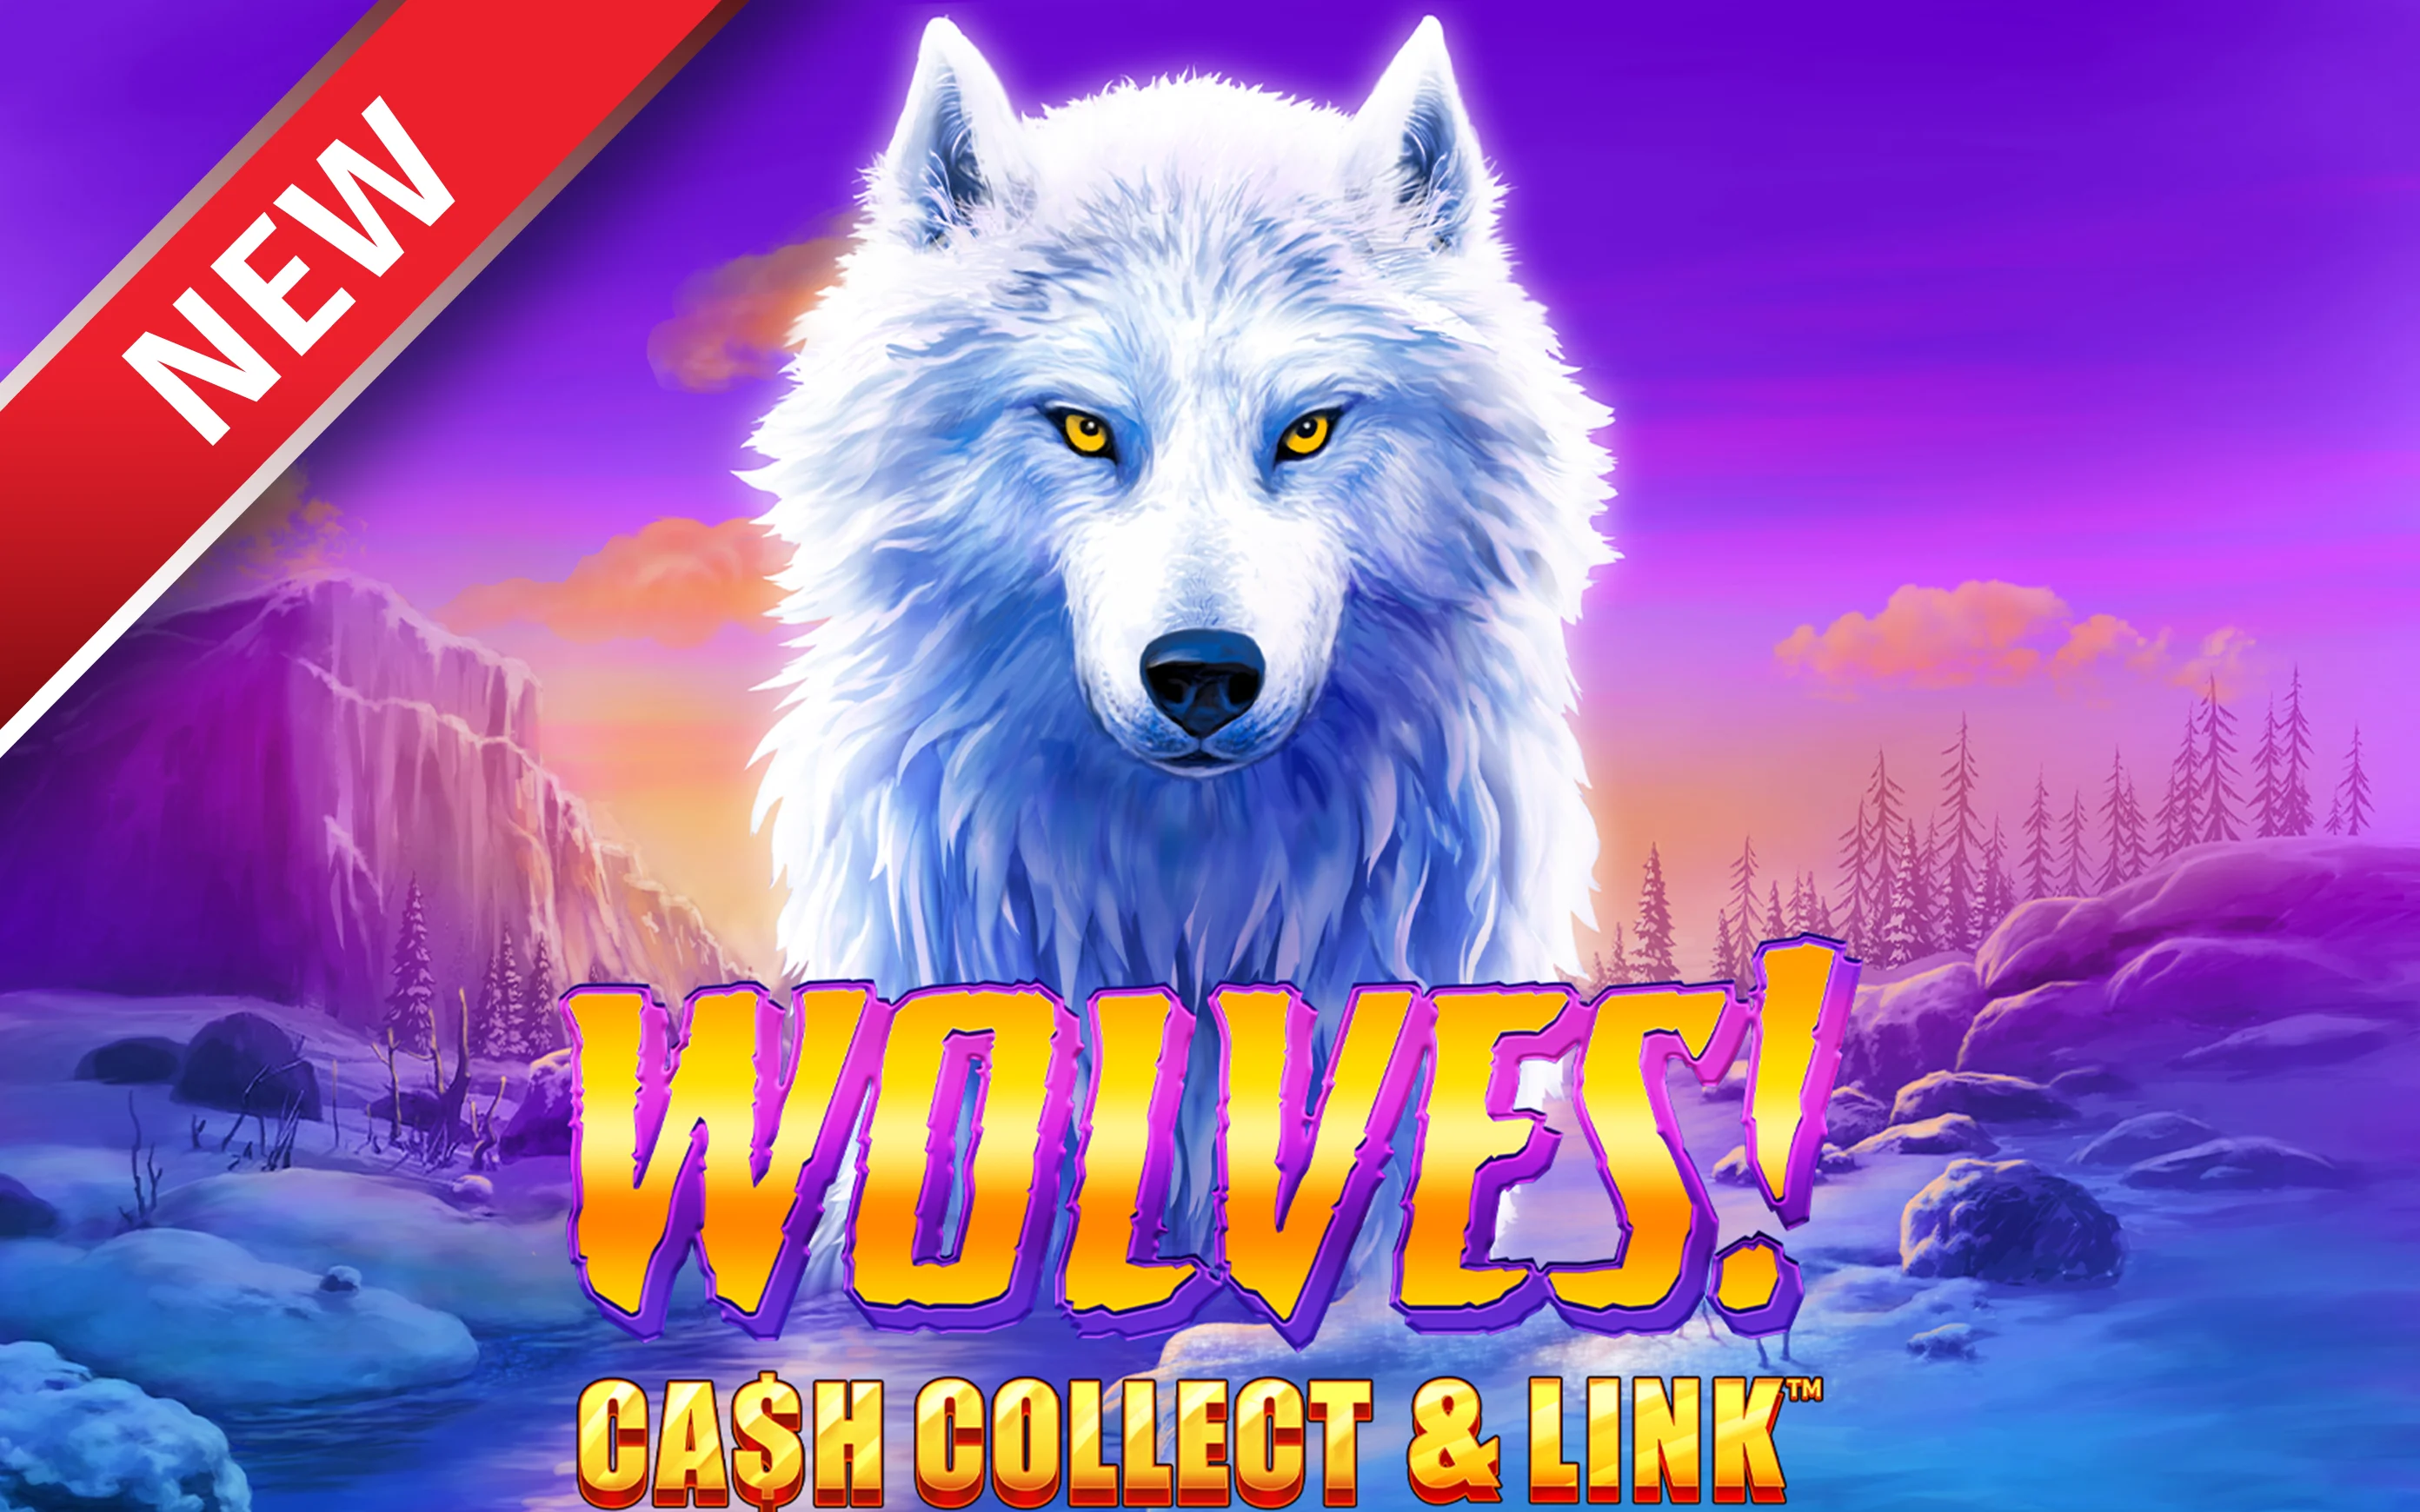 Luaj Wolves! Cash Collect & Link™ në kazino Starcasino.be në internet